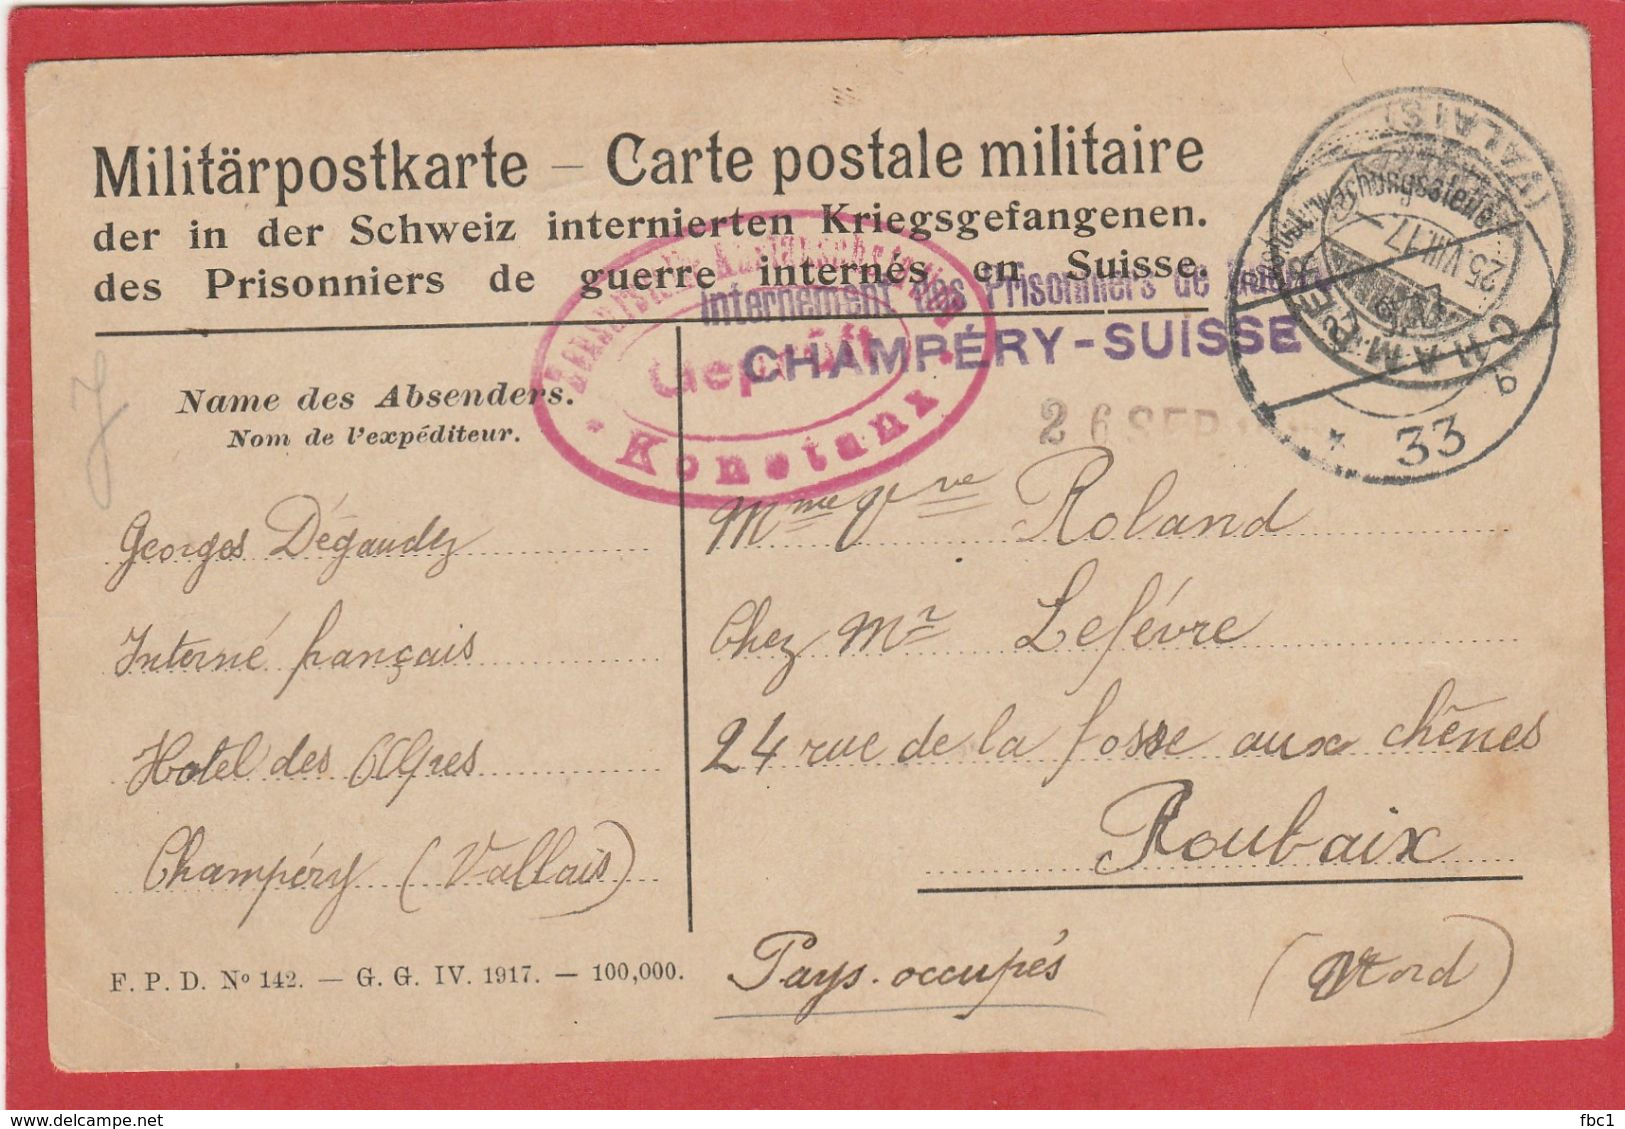 Suisse - Carte En Franchise "Internement Des Prisonniers De Guerre" Champéry -Suisse (Valais) Vers Roubaix 1917 - 1. Weltkrieg 1914-1918